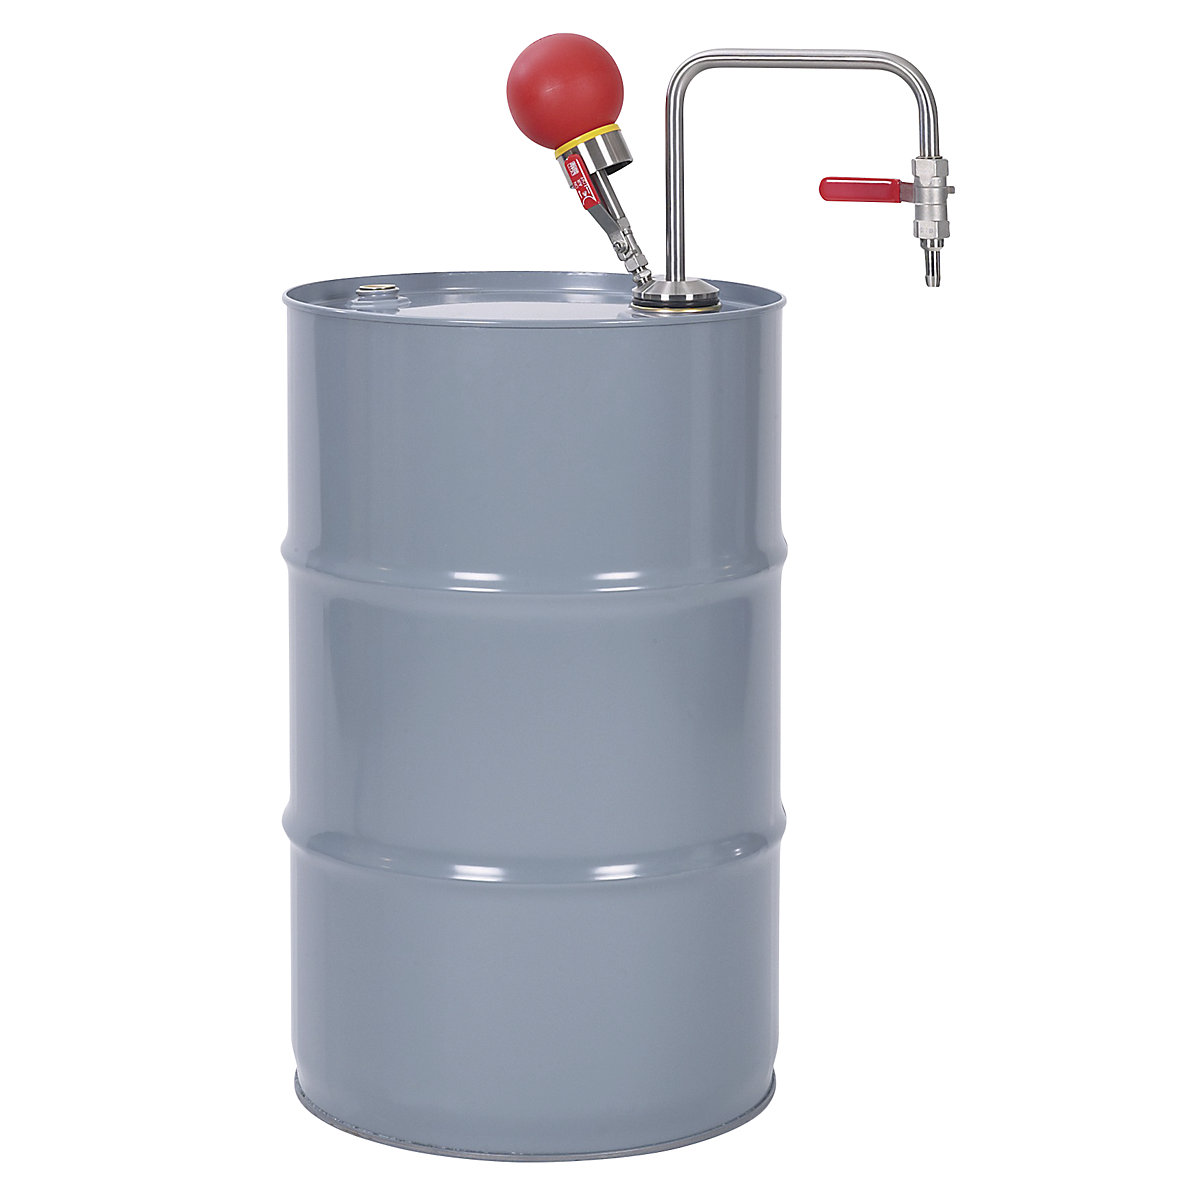 Črpalka za topila, iz nerjavnega jekla, upravljanje z roko (Slika izdelka 7)